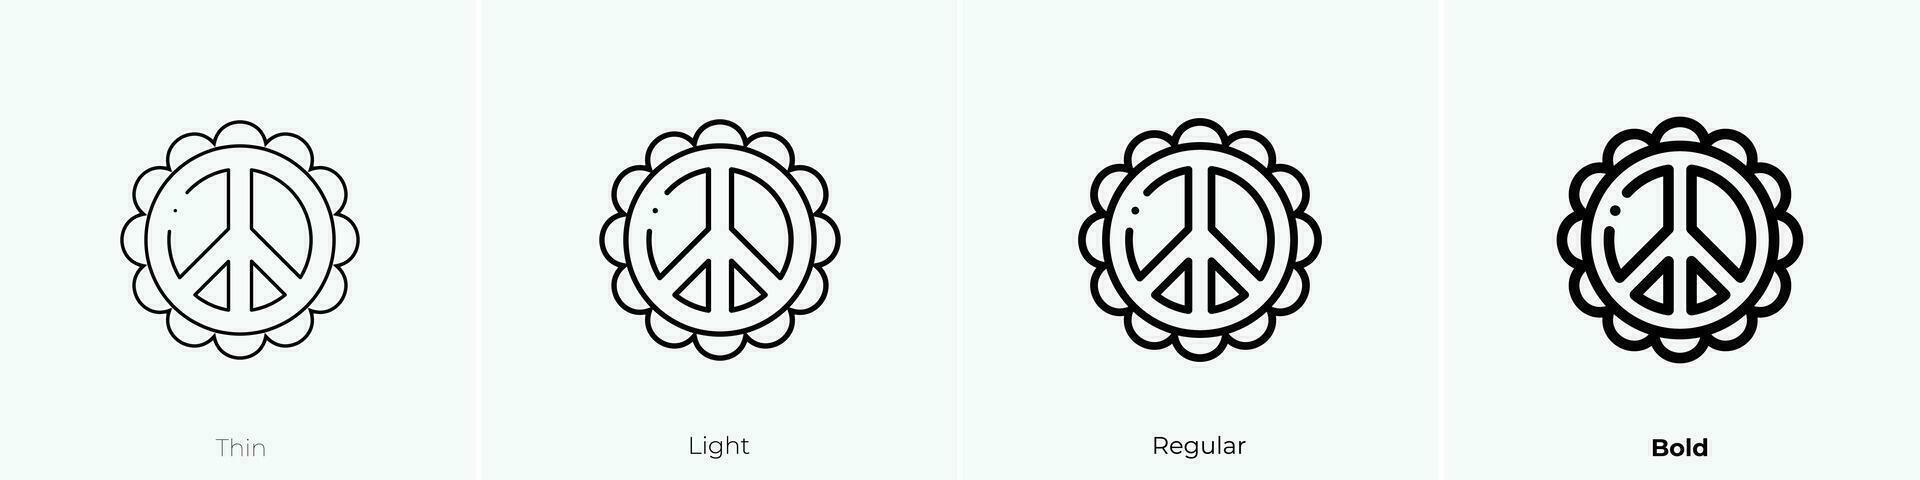 Frieden Symbol Symbol. dünn, Licht, regulär und Fett gedruckt Stil Design isoliert auf Weiß Hintergrund vektor